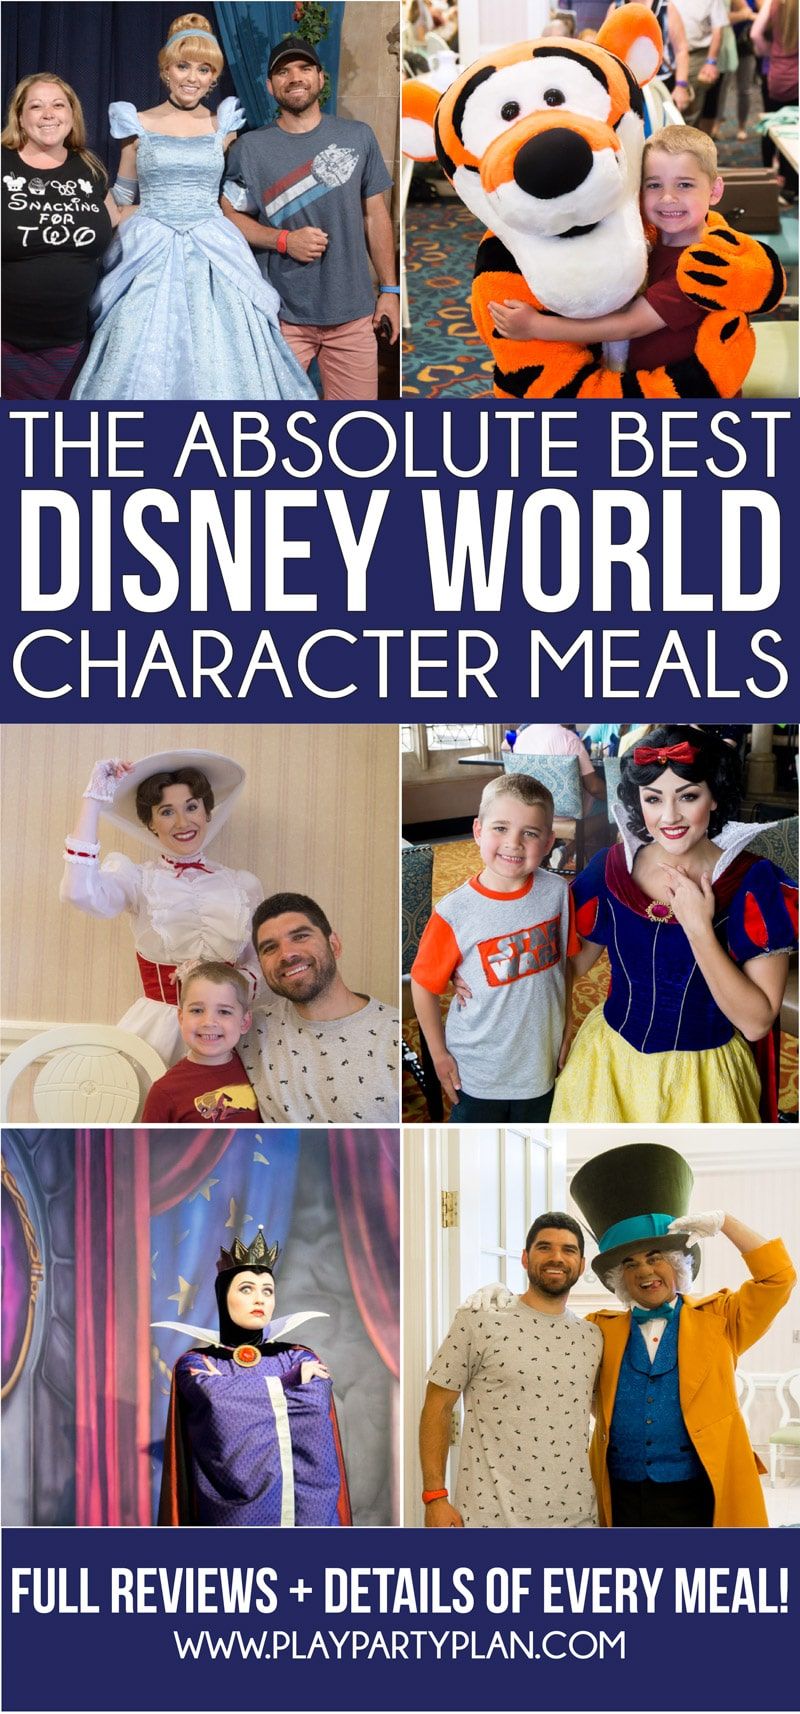 2019 için güncellenen Disney World karakter yemeğinin nihai rehberi! Kahvaltı alabileceğiniz en iyi yerlerin listesi, hangi tatil köylerinde karakter yemekleri vardır, aileler için en iyisi ve daha fazlası! Ve her Disney karakter yemeğinin bireysel incelemeleri!